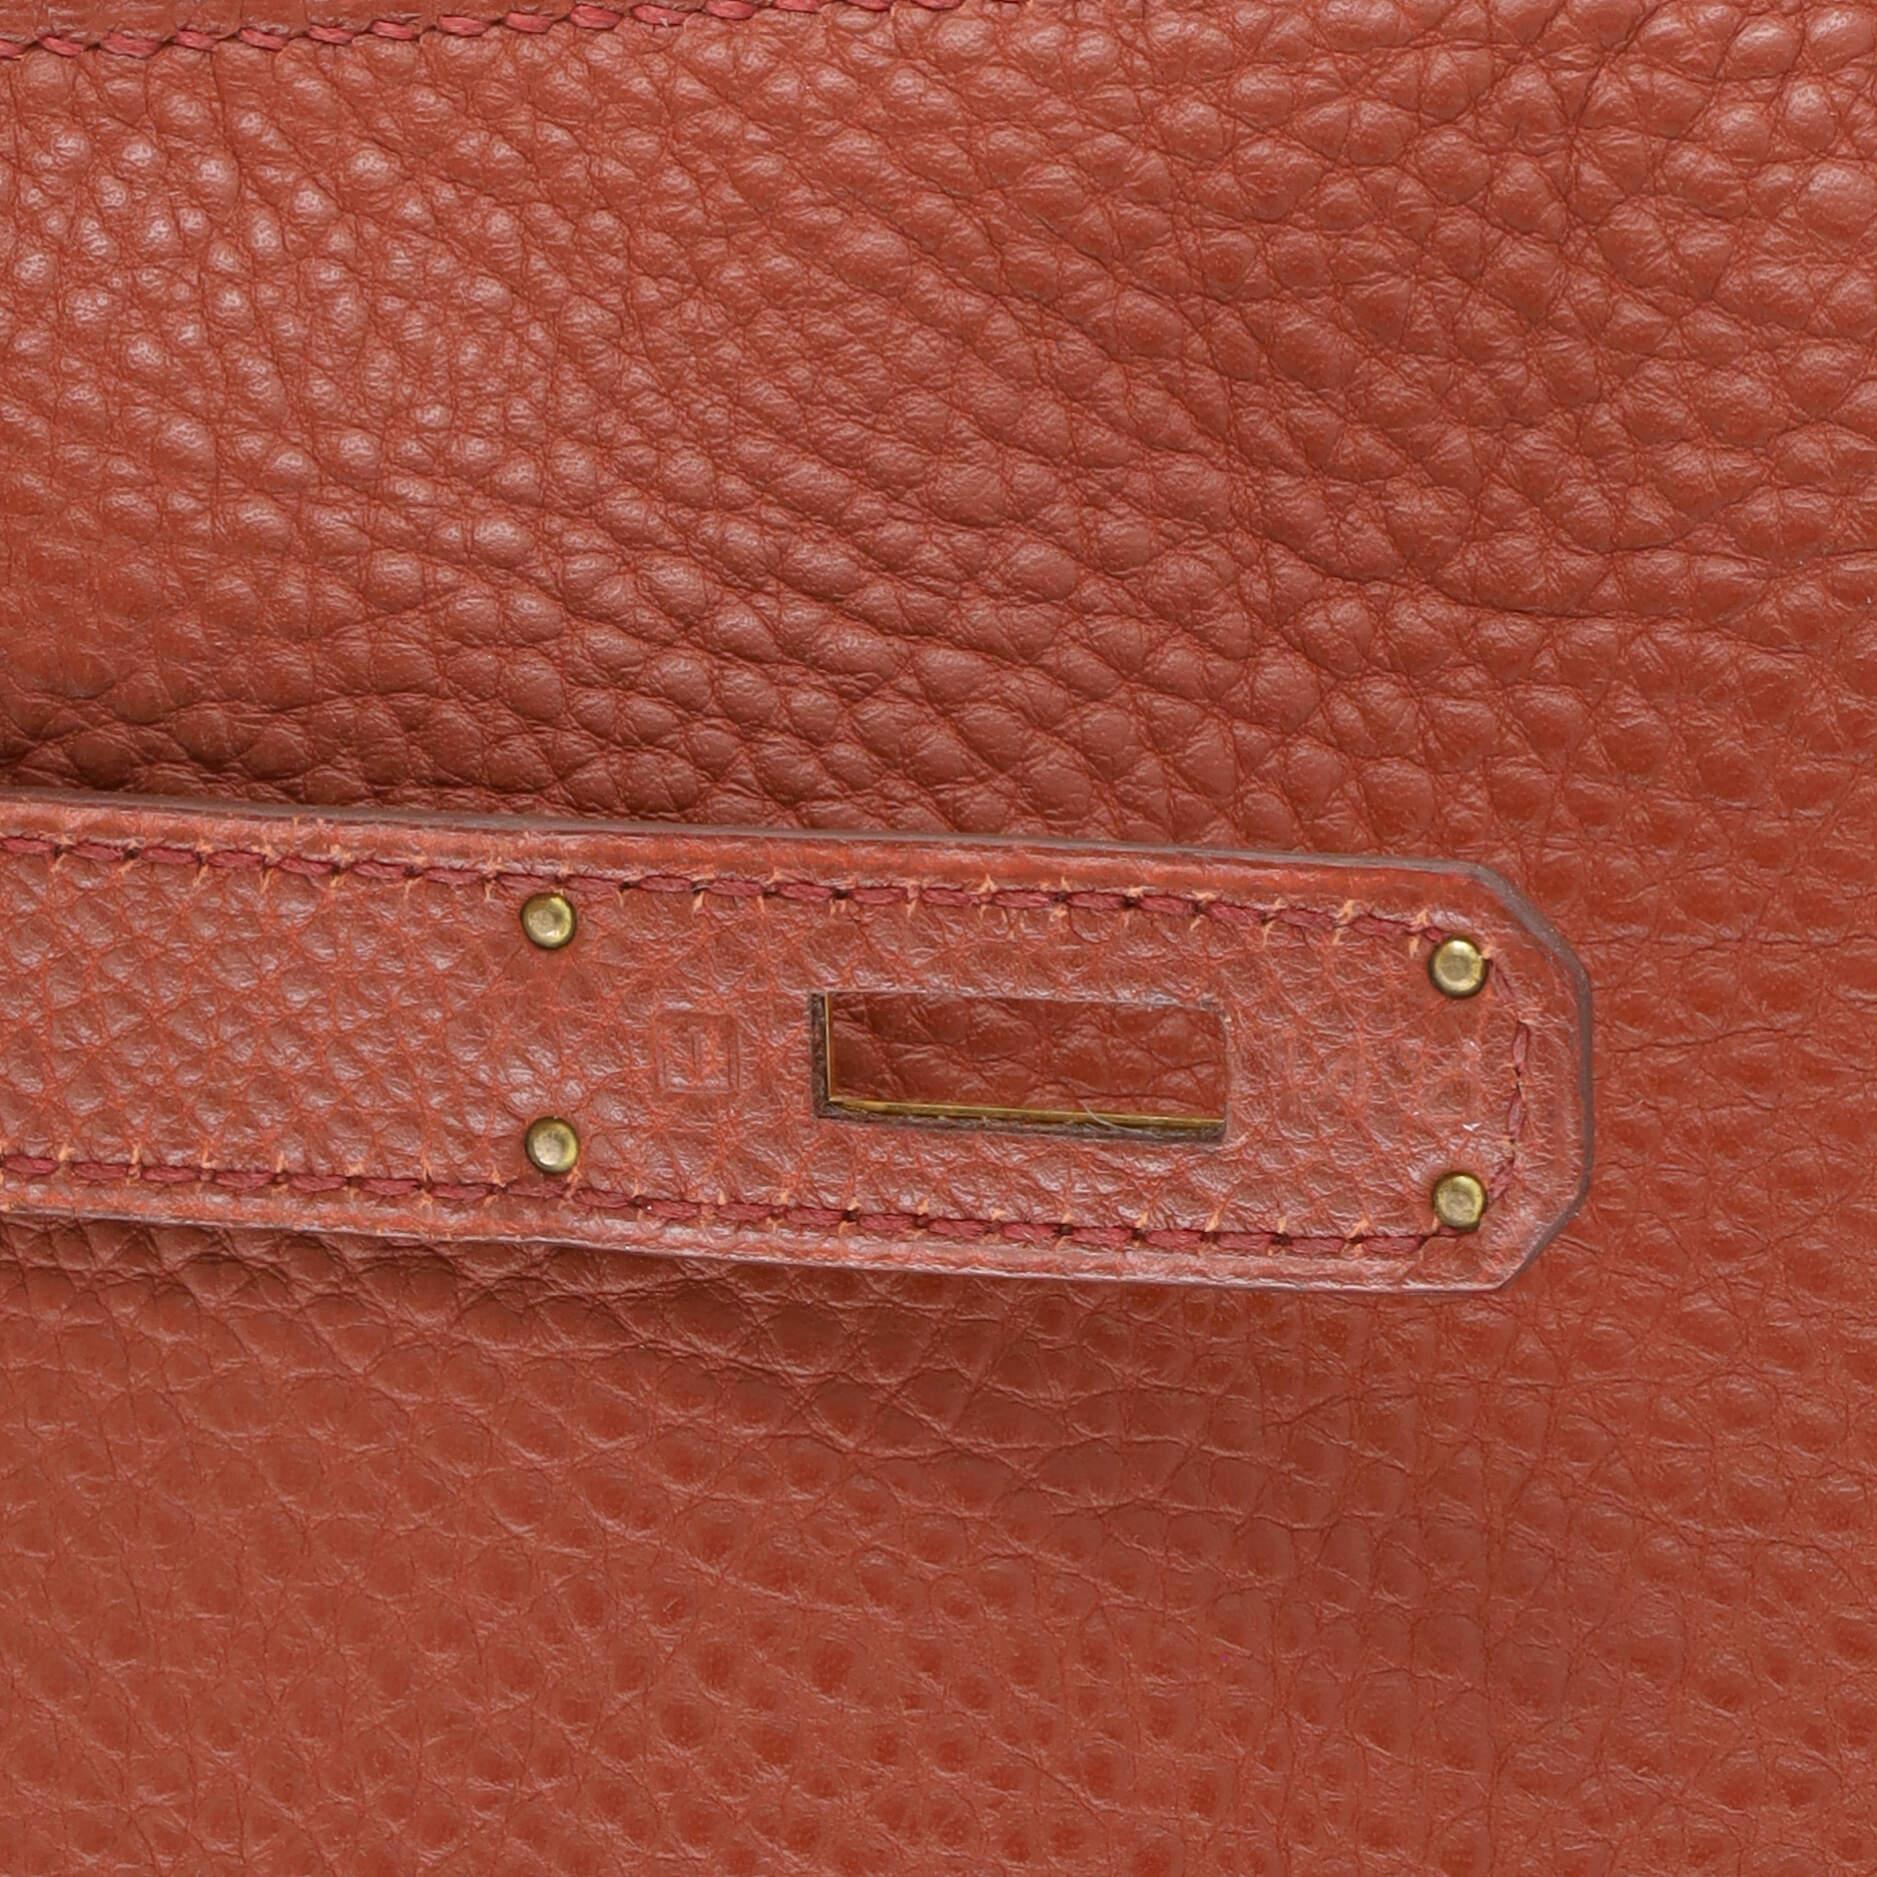 Hermes Kelly Handbag Sienne Togo with Gold Hardware 32 7